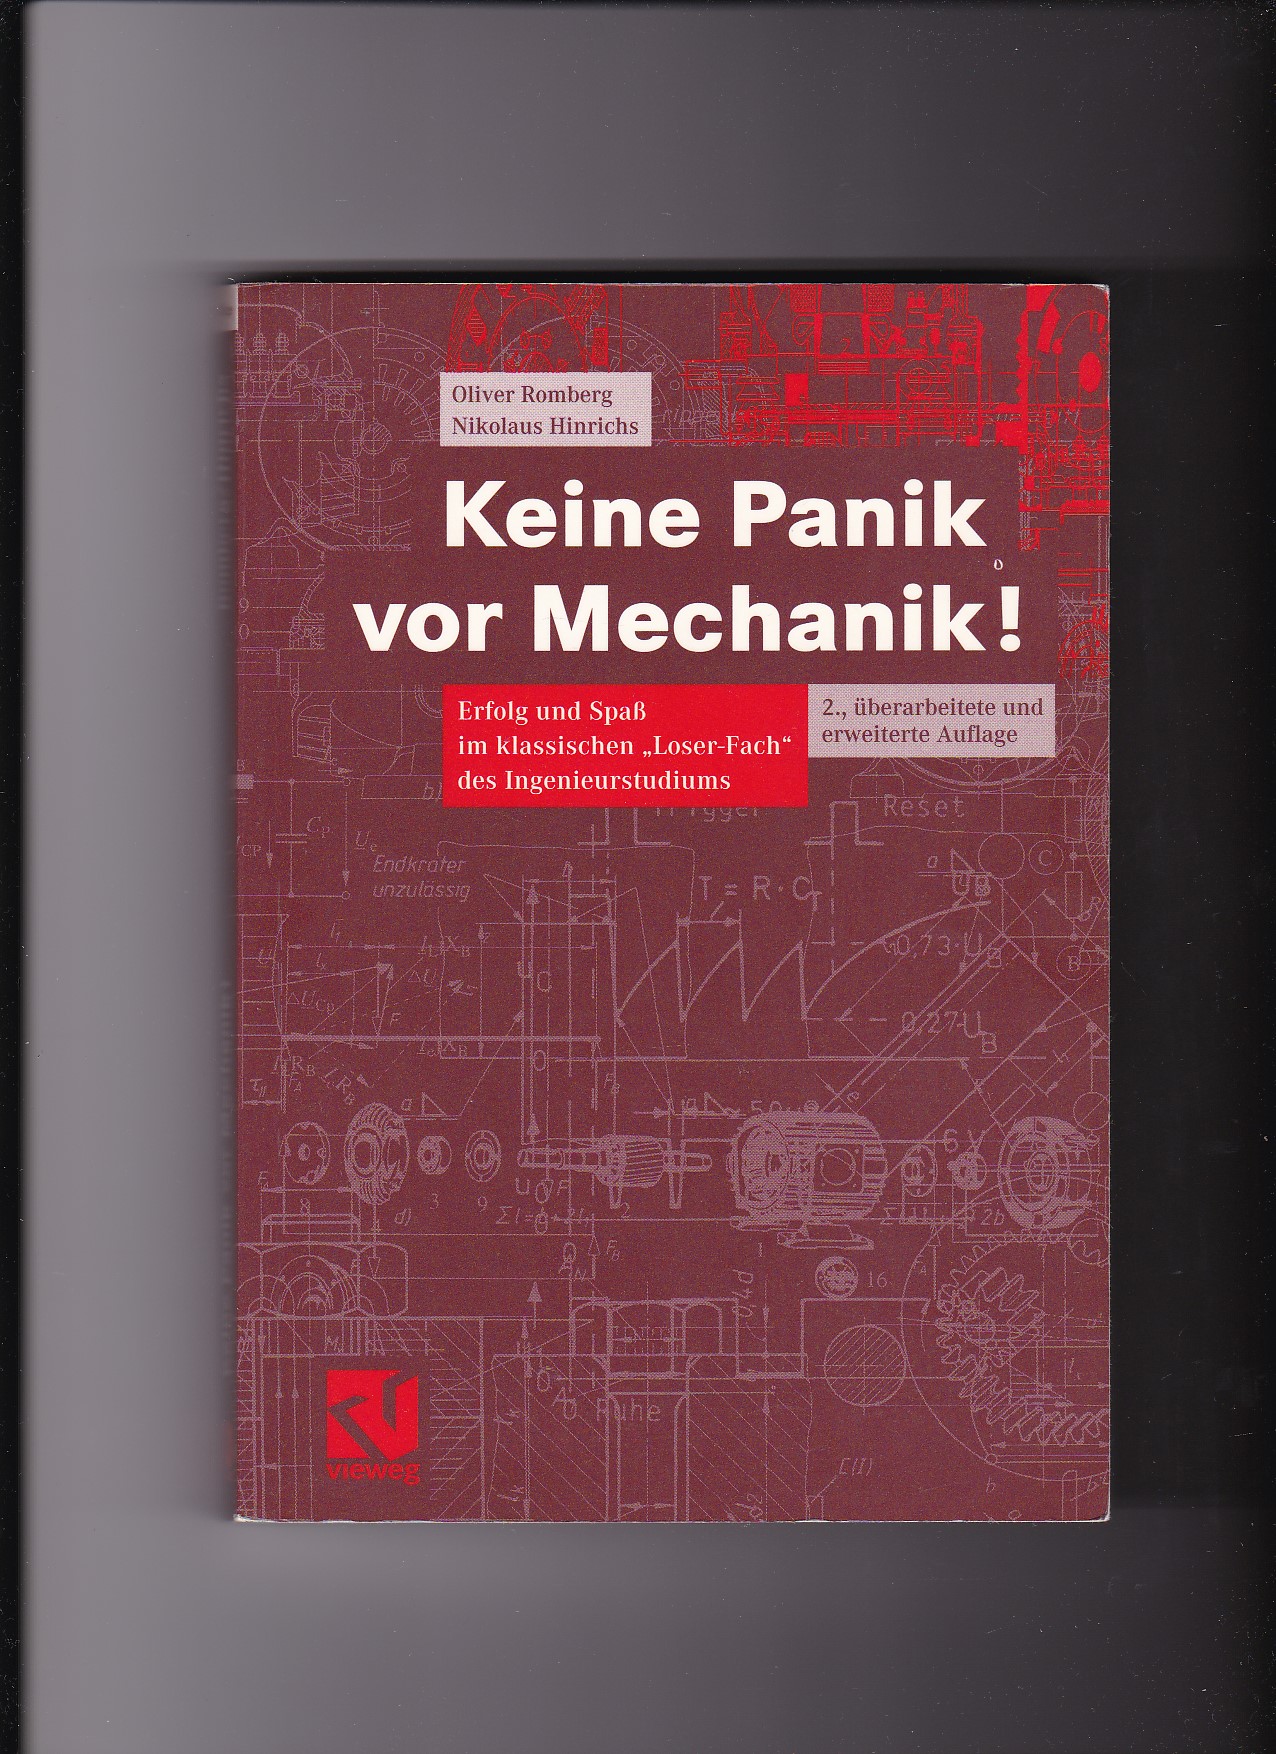 Oliver Romberg, Keine Panik vor Mechanik ! : Erfolg und Spaß im klassischen 